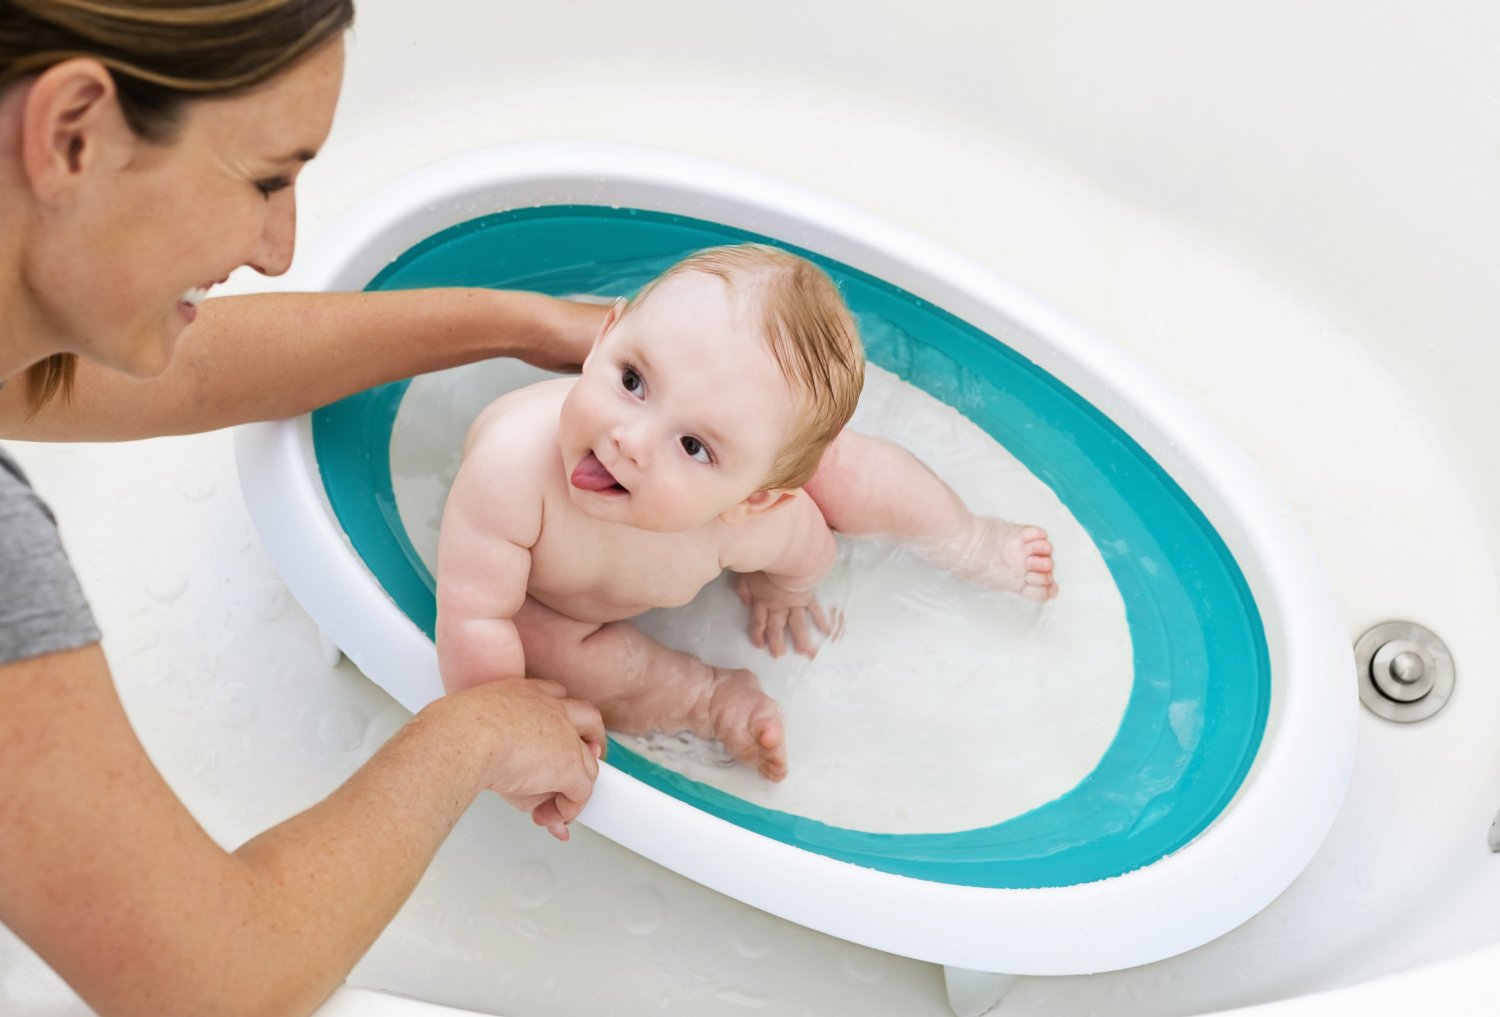 Les 10 meilleurs transats de bain : comparatif, avis et test